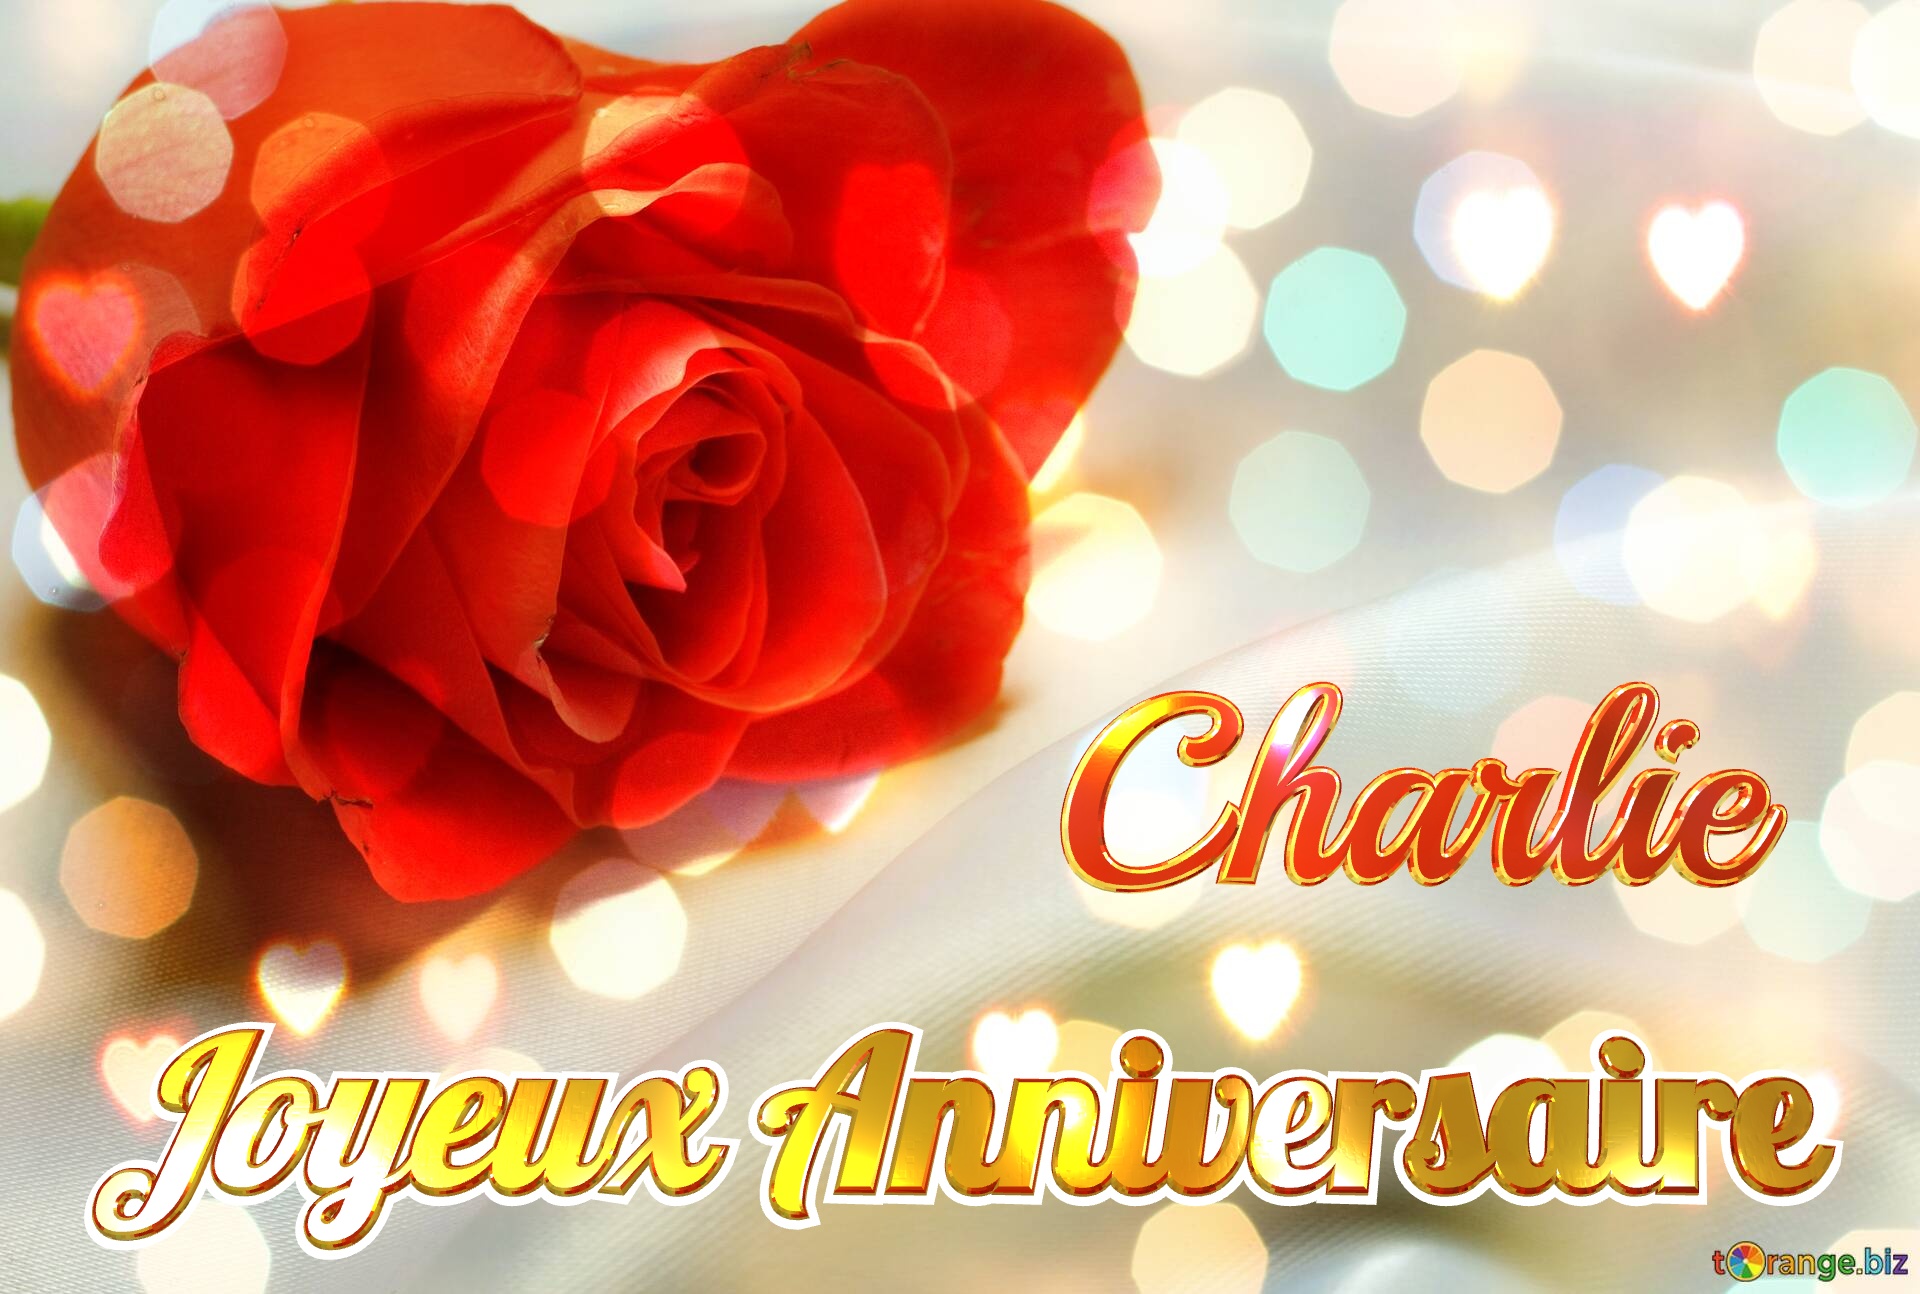 Joyeux Anniversaire Charlie  Fond de rose №0